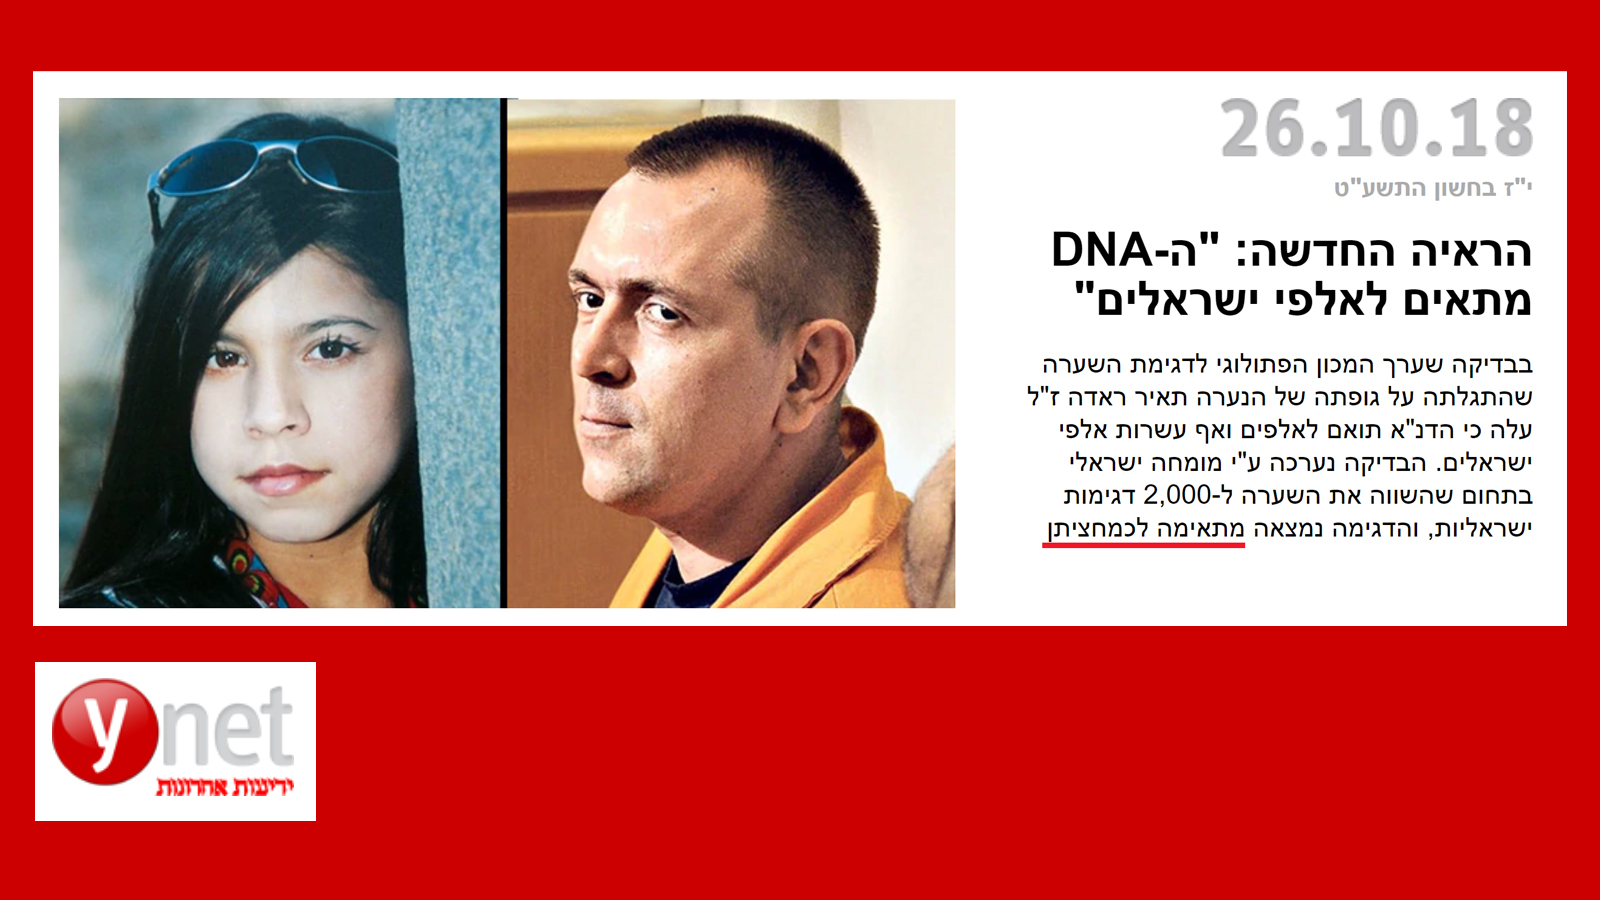 התיקונים: ב-ynet מתבלבלים באחוזים בכותרת הראשית על תאיר ראדה ורומן זדורוב | העין השביעית